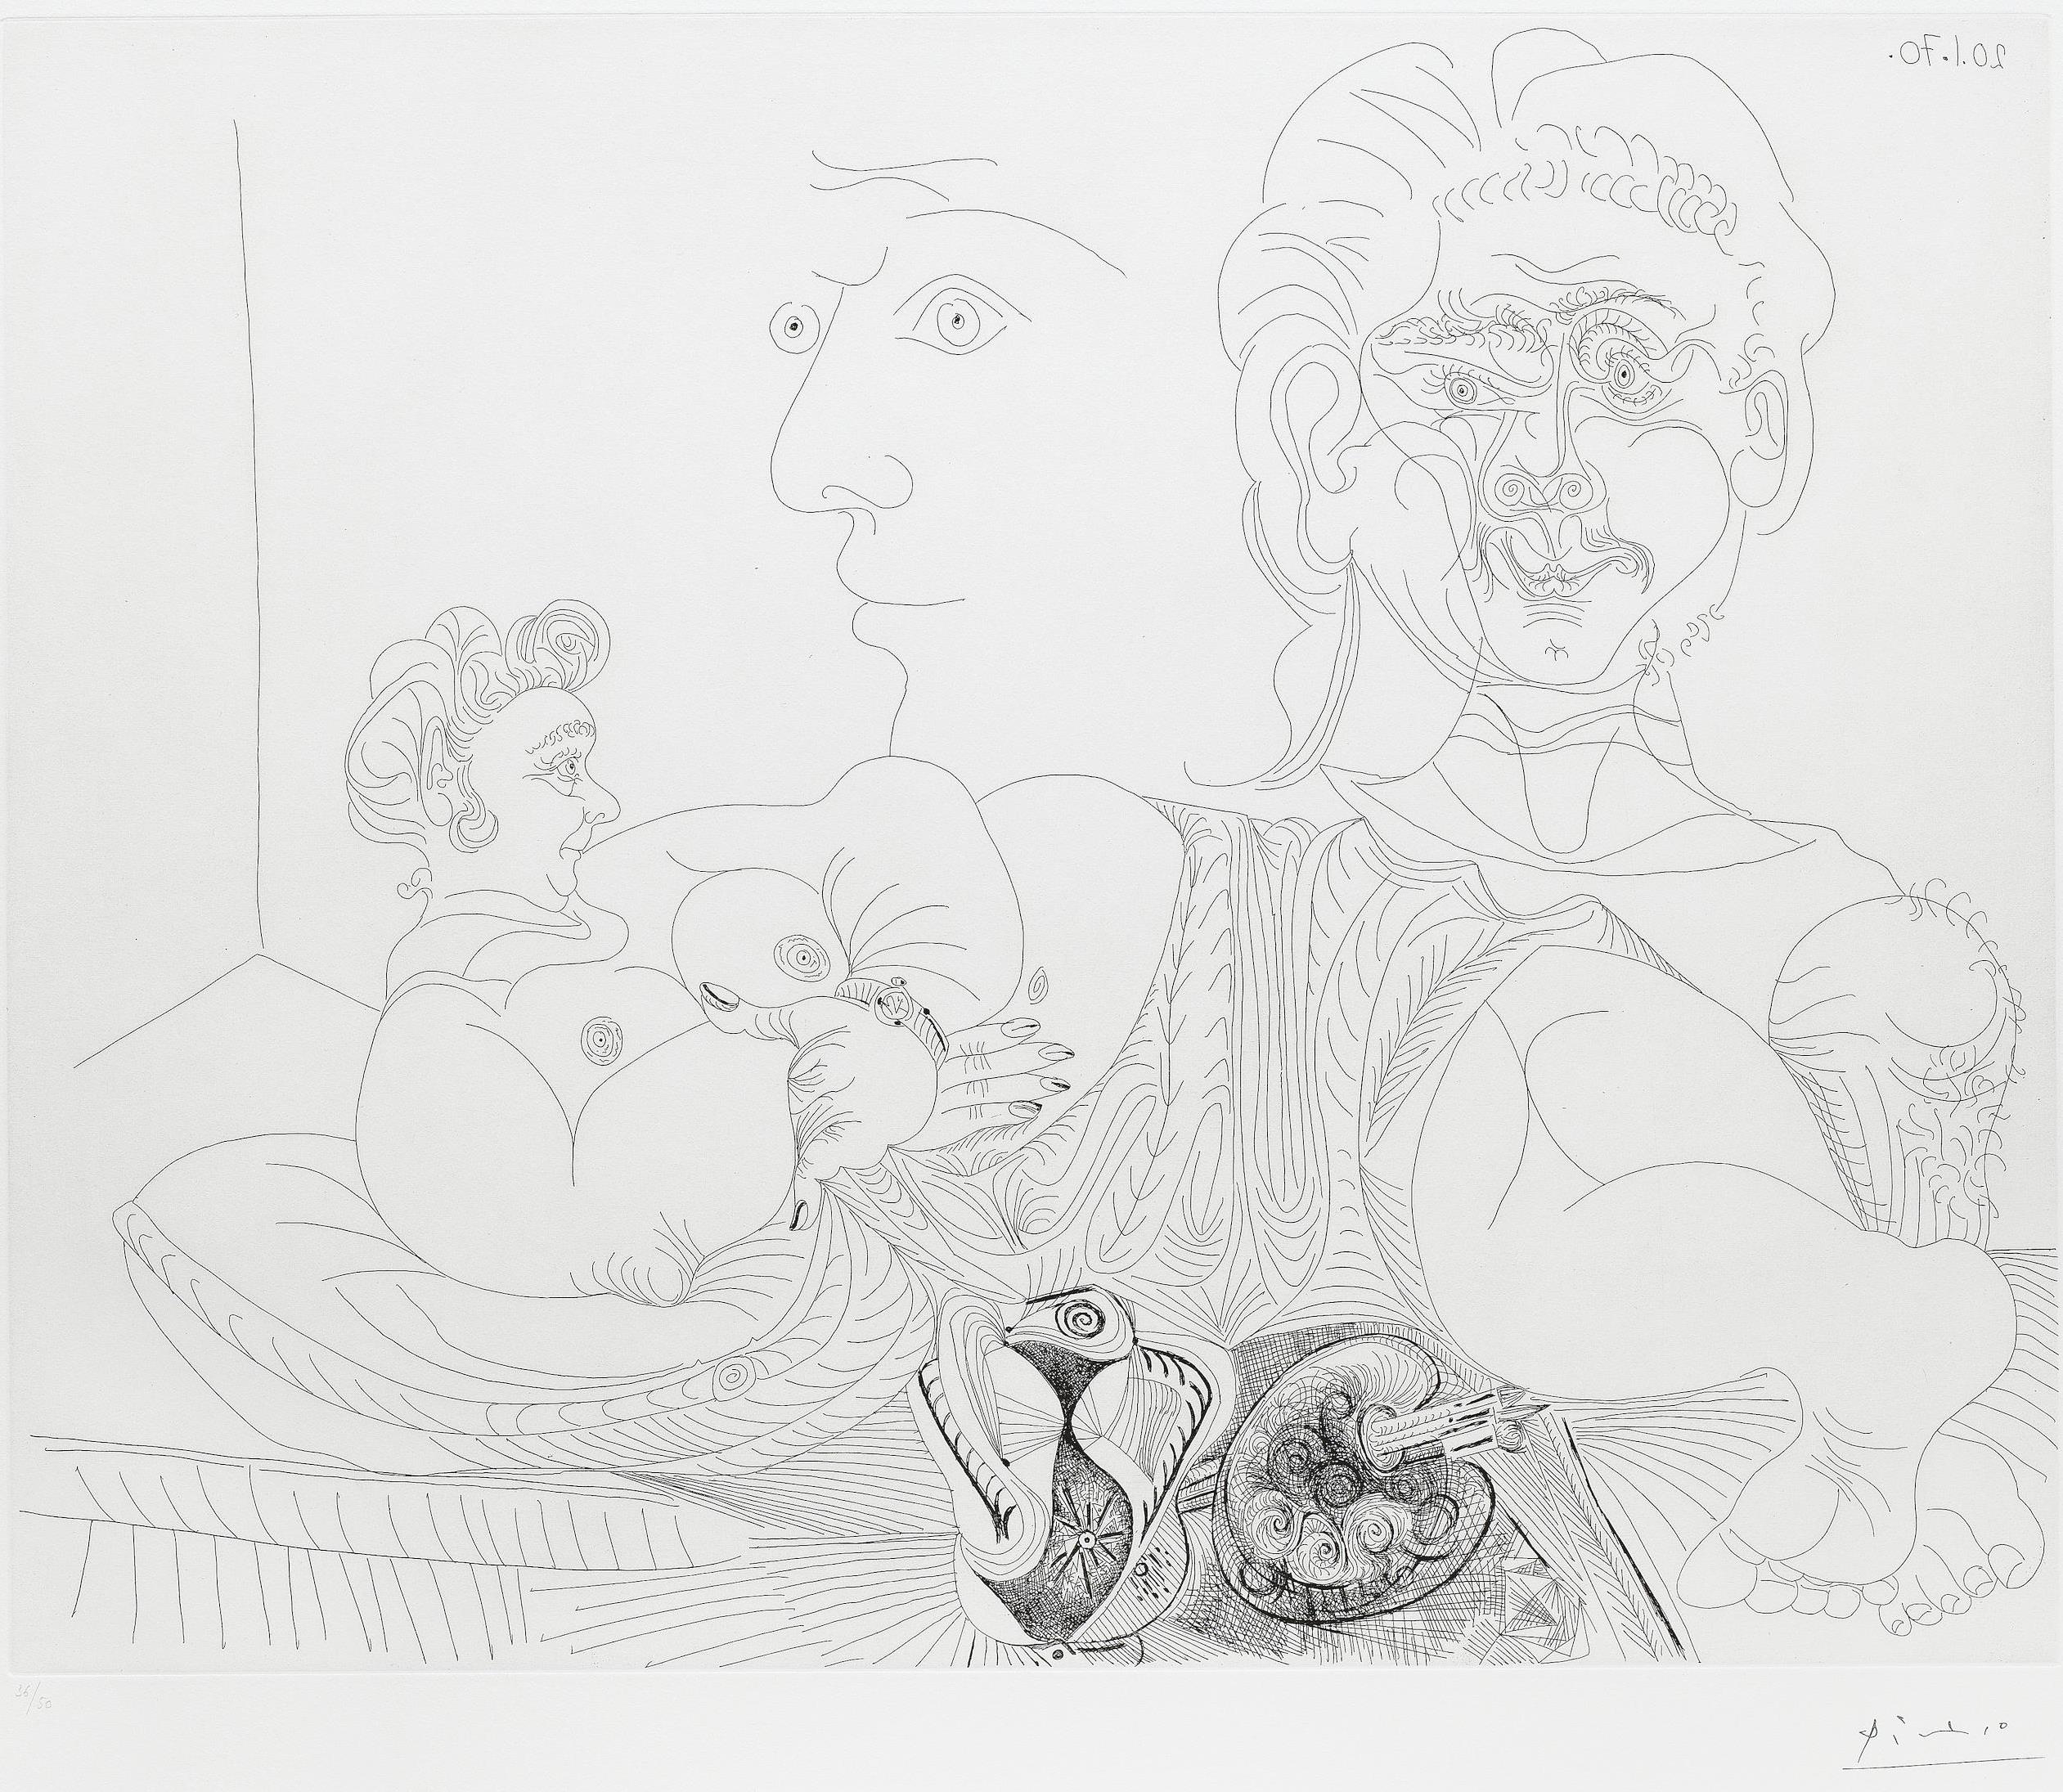 Pablo Picasso, Femme couchée et deux visages, 1970, Radierung, 47,5 x 59,1 cm, aus der Suite 156
